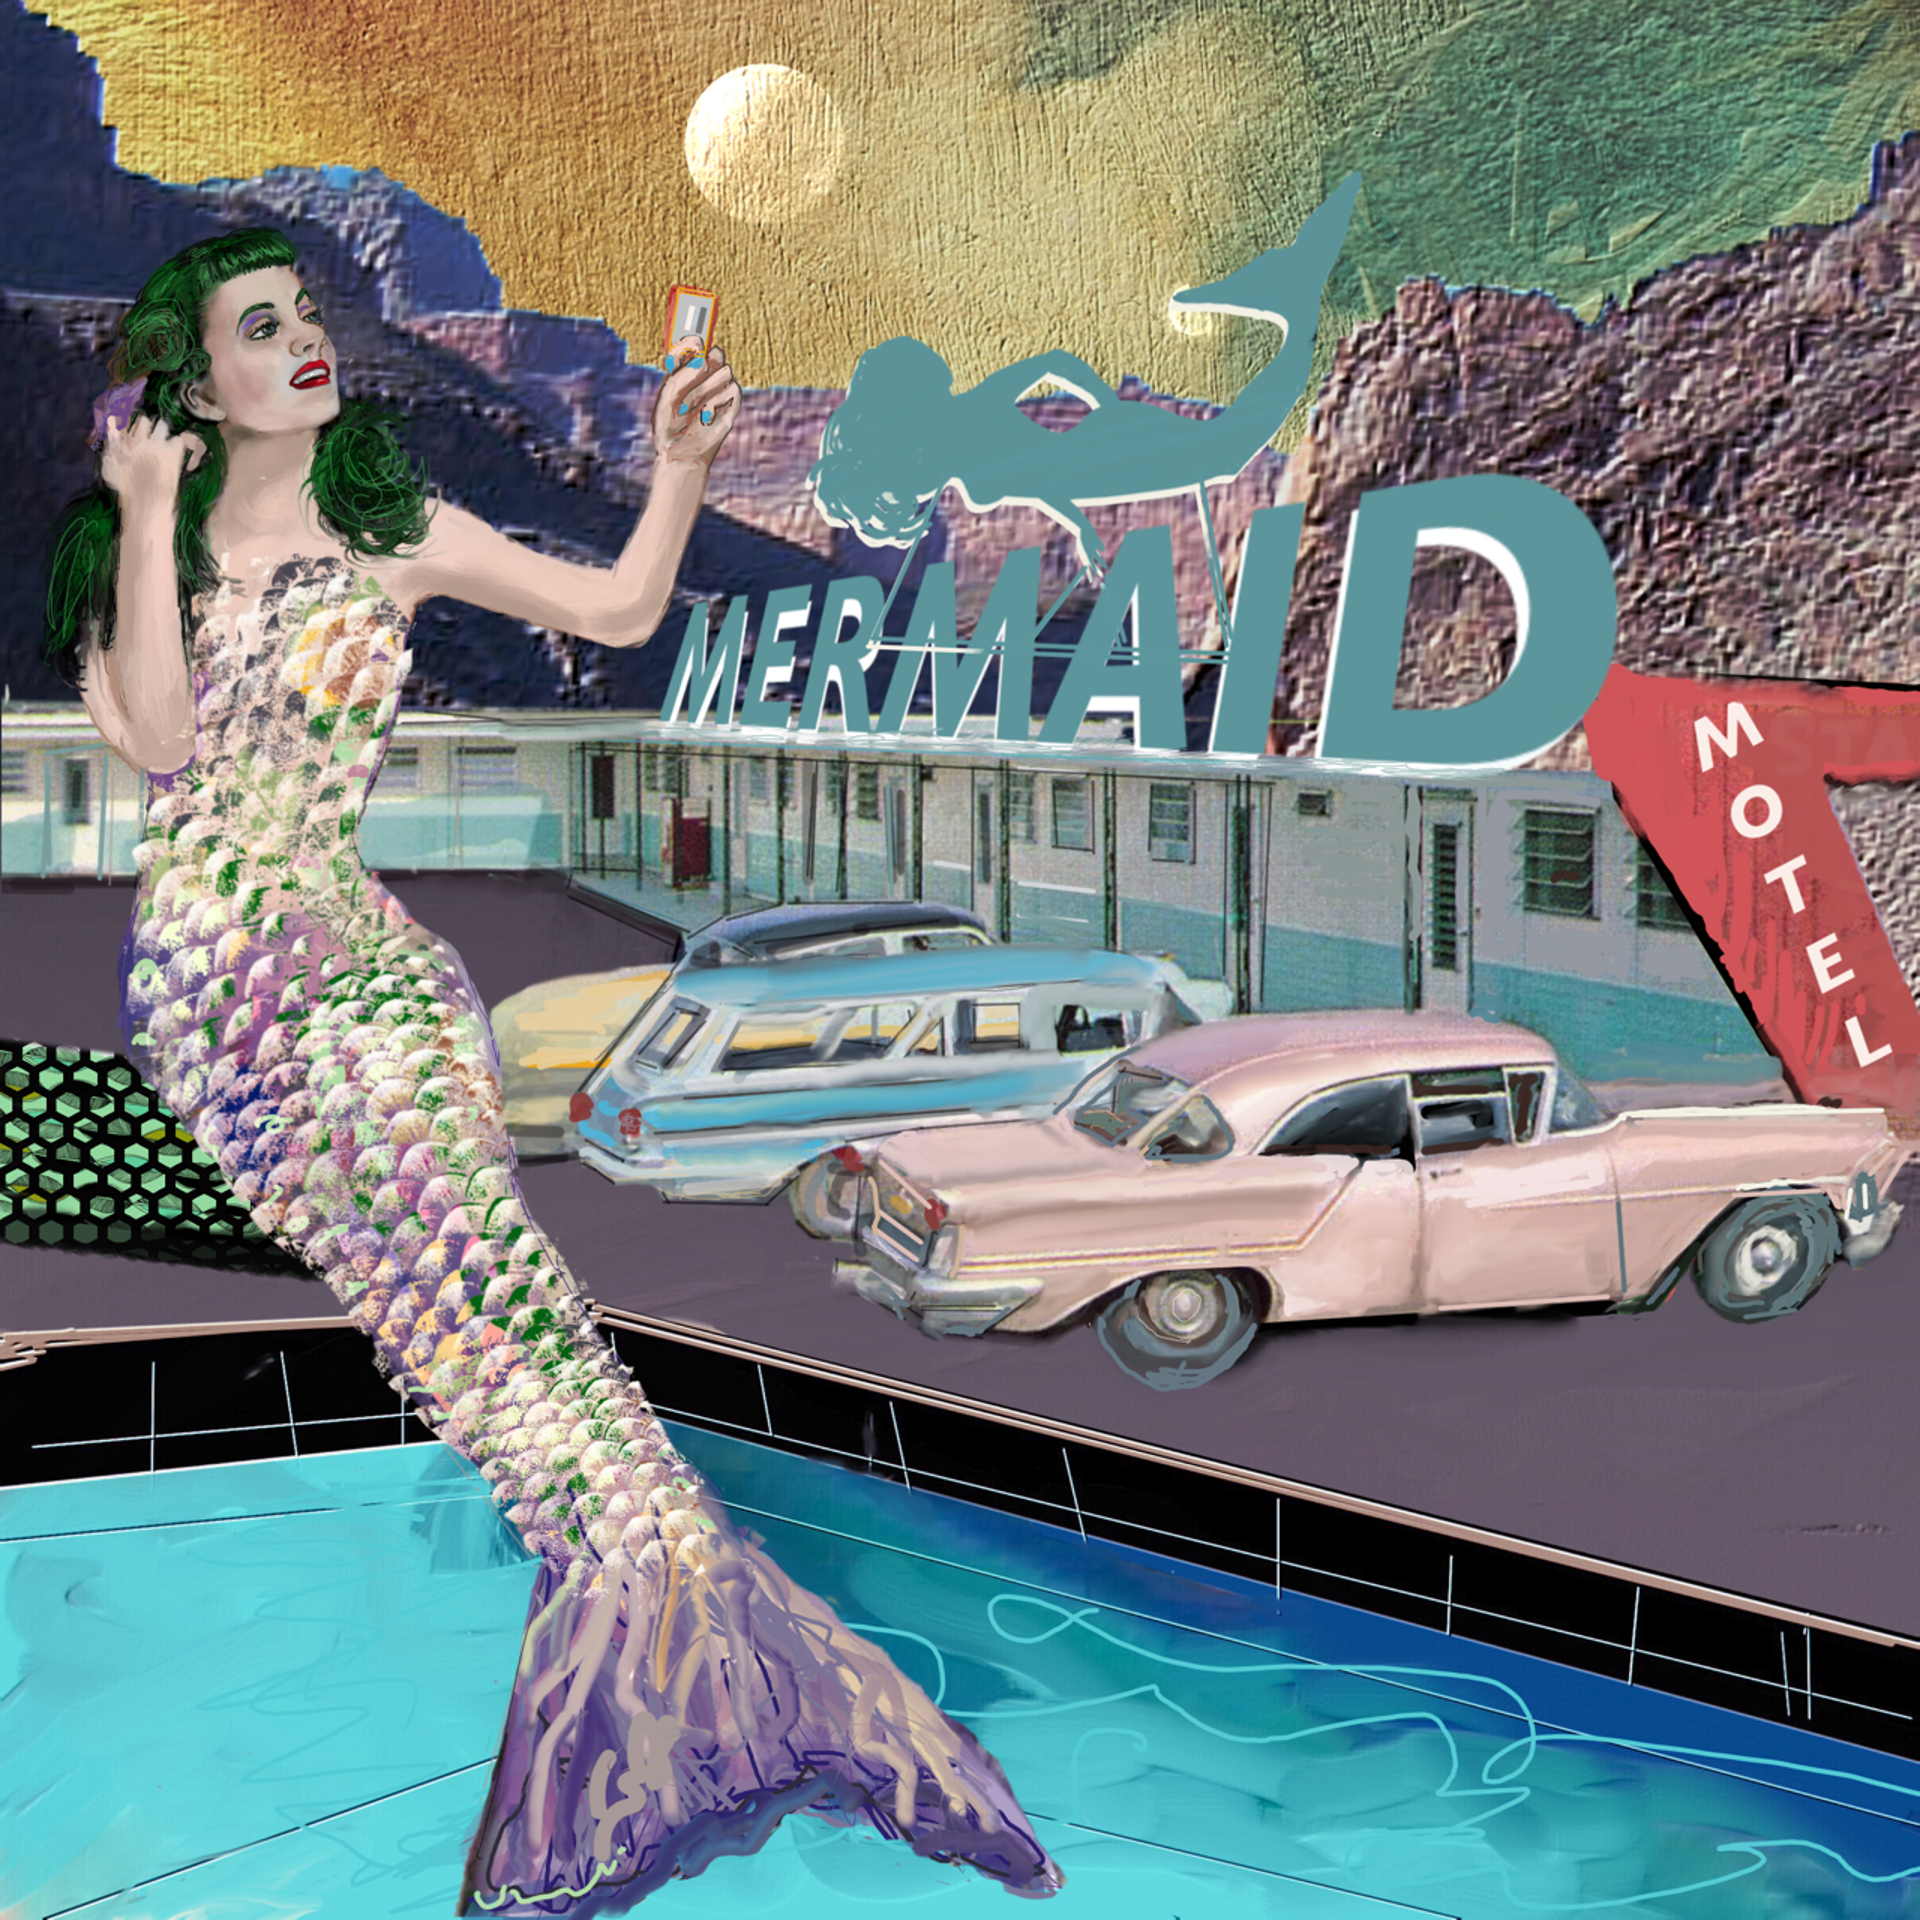 Mermaid Motel by Deborah McMillion Nering